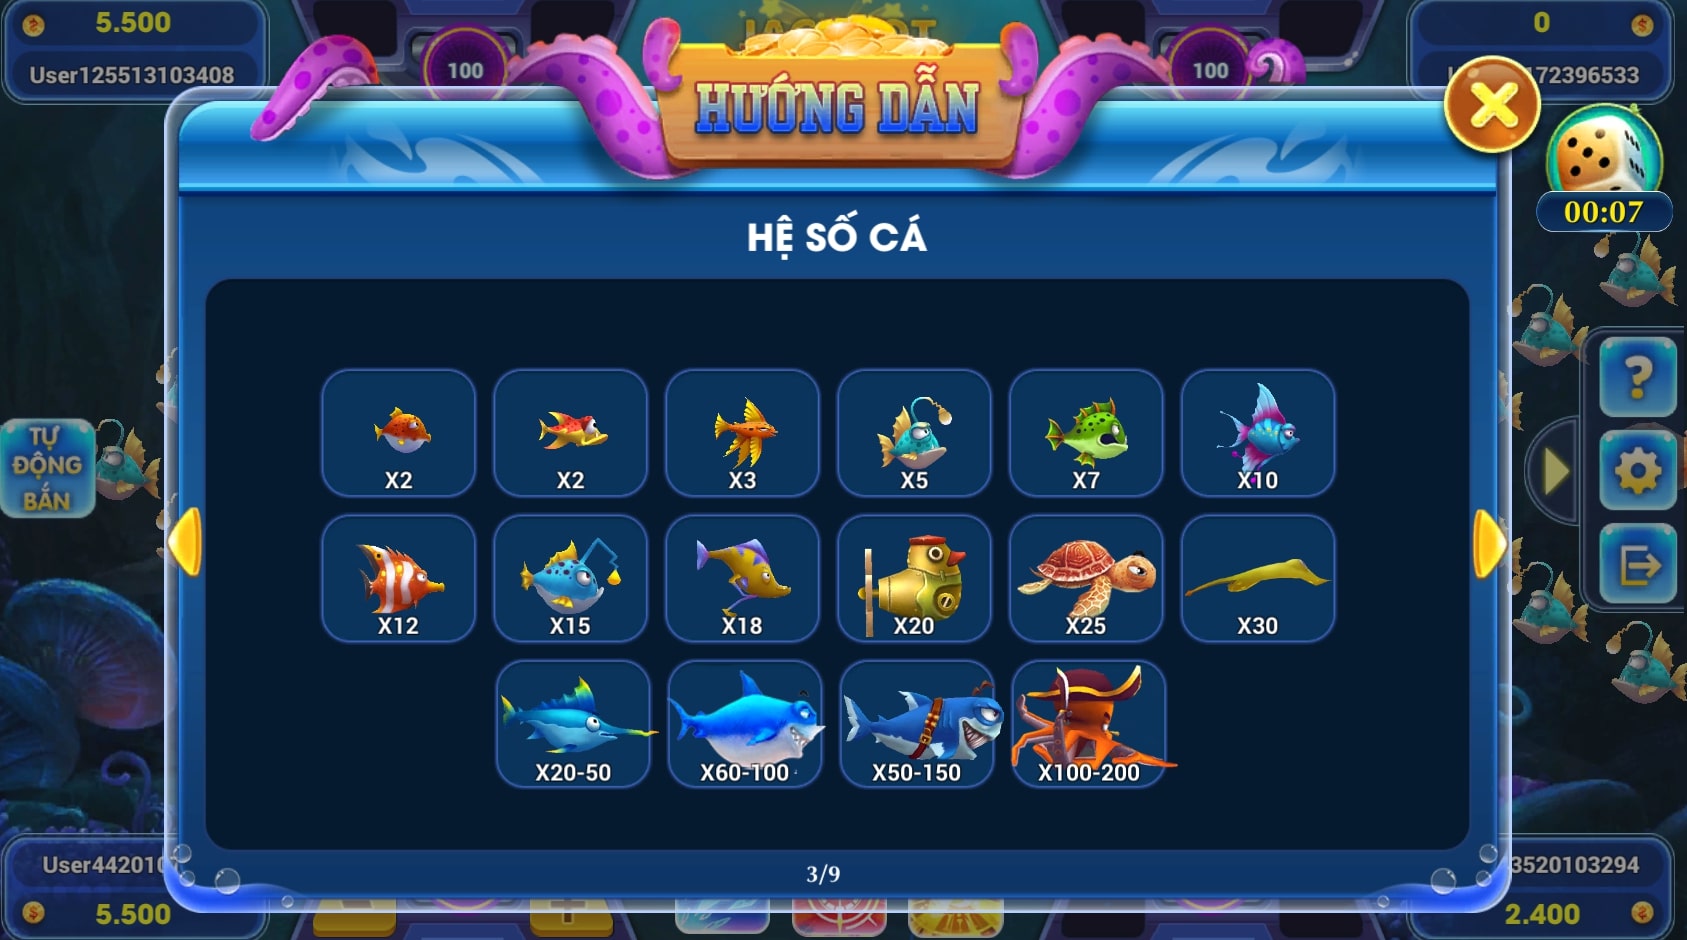 Hệ số cá trong game Vua Hải Tặc